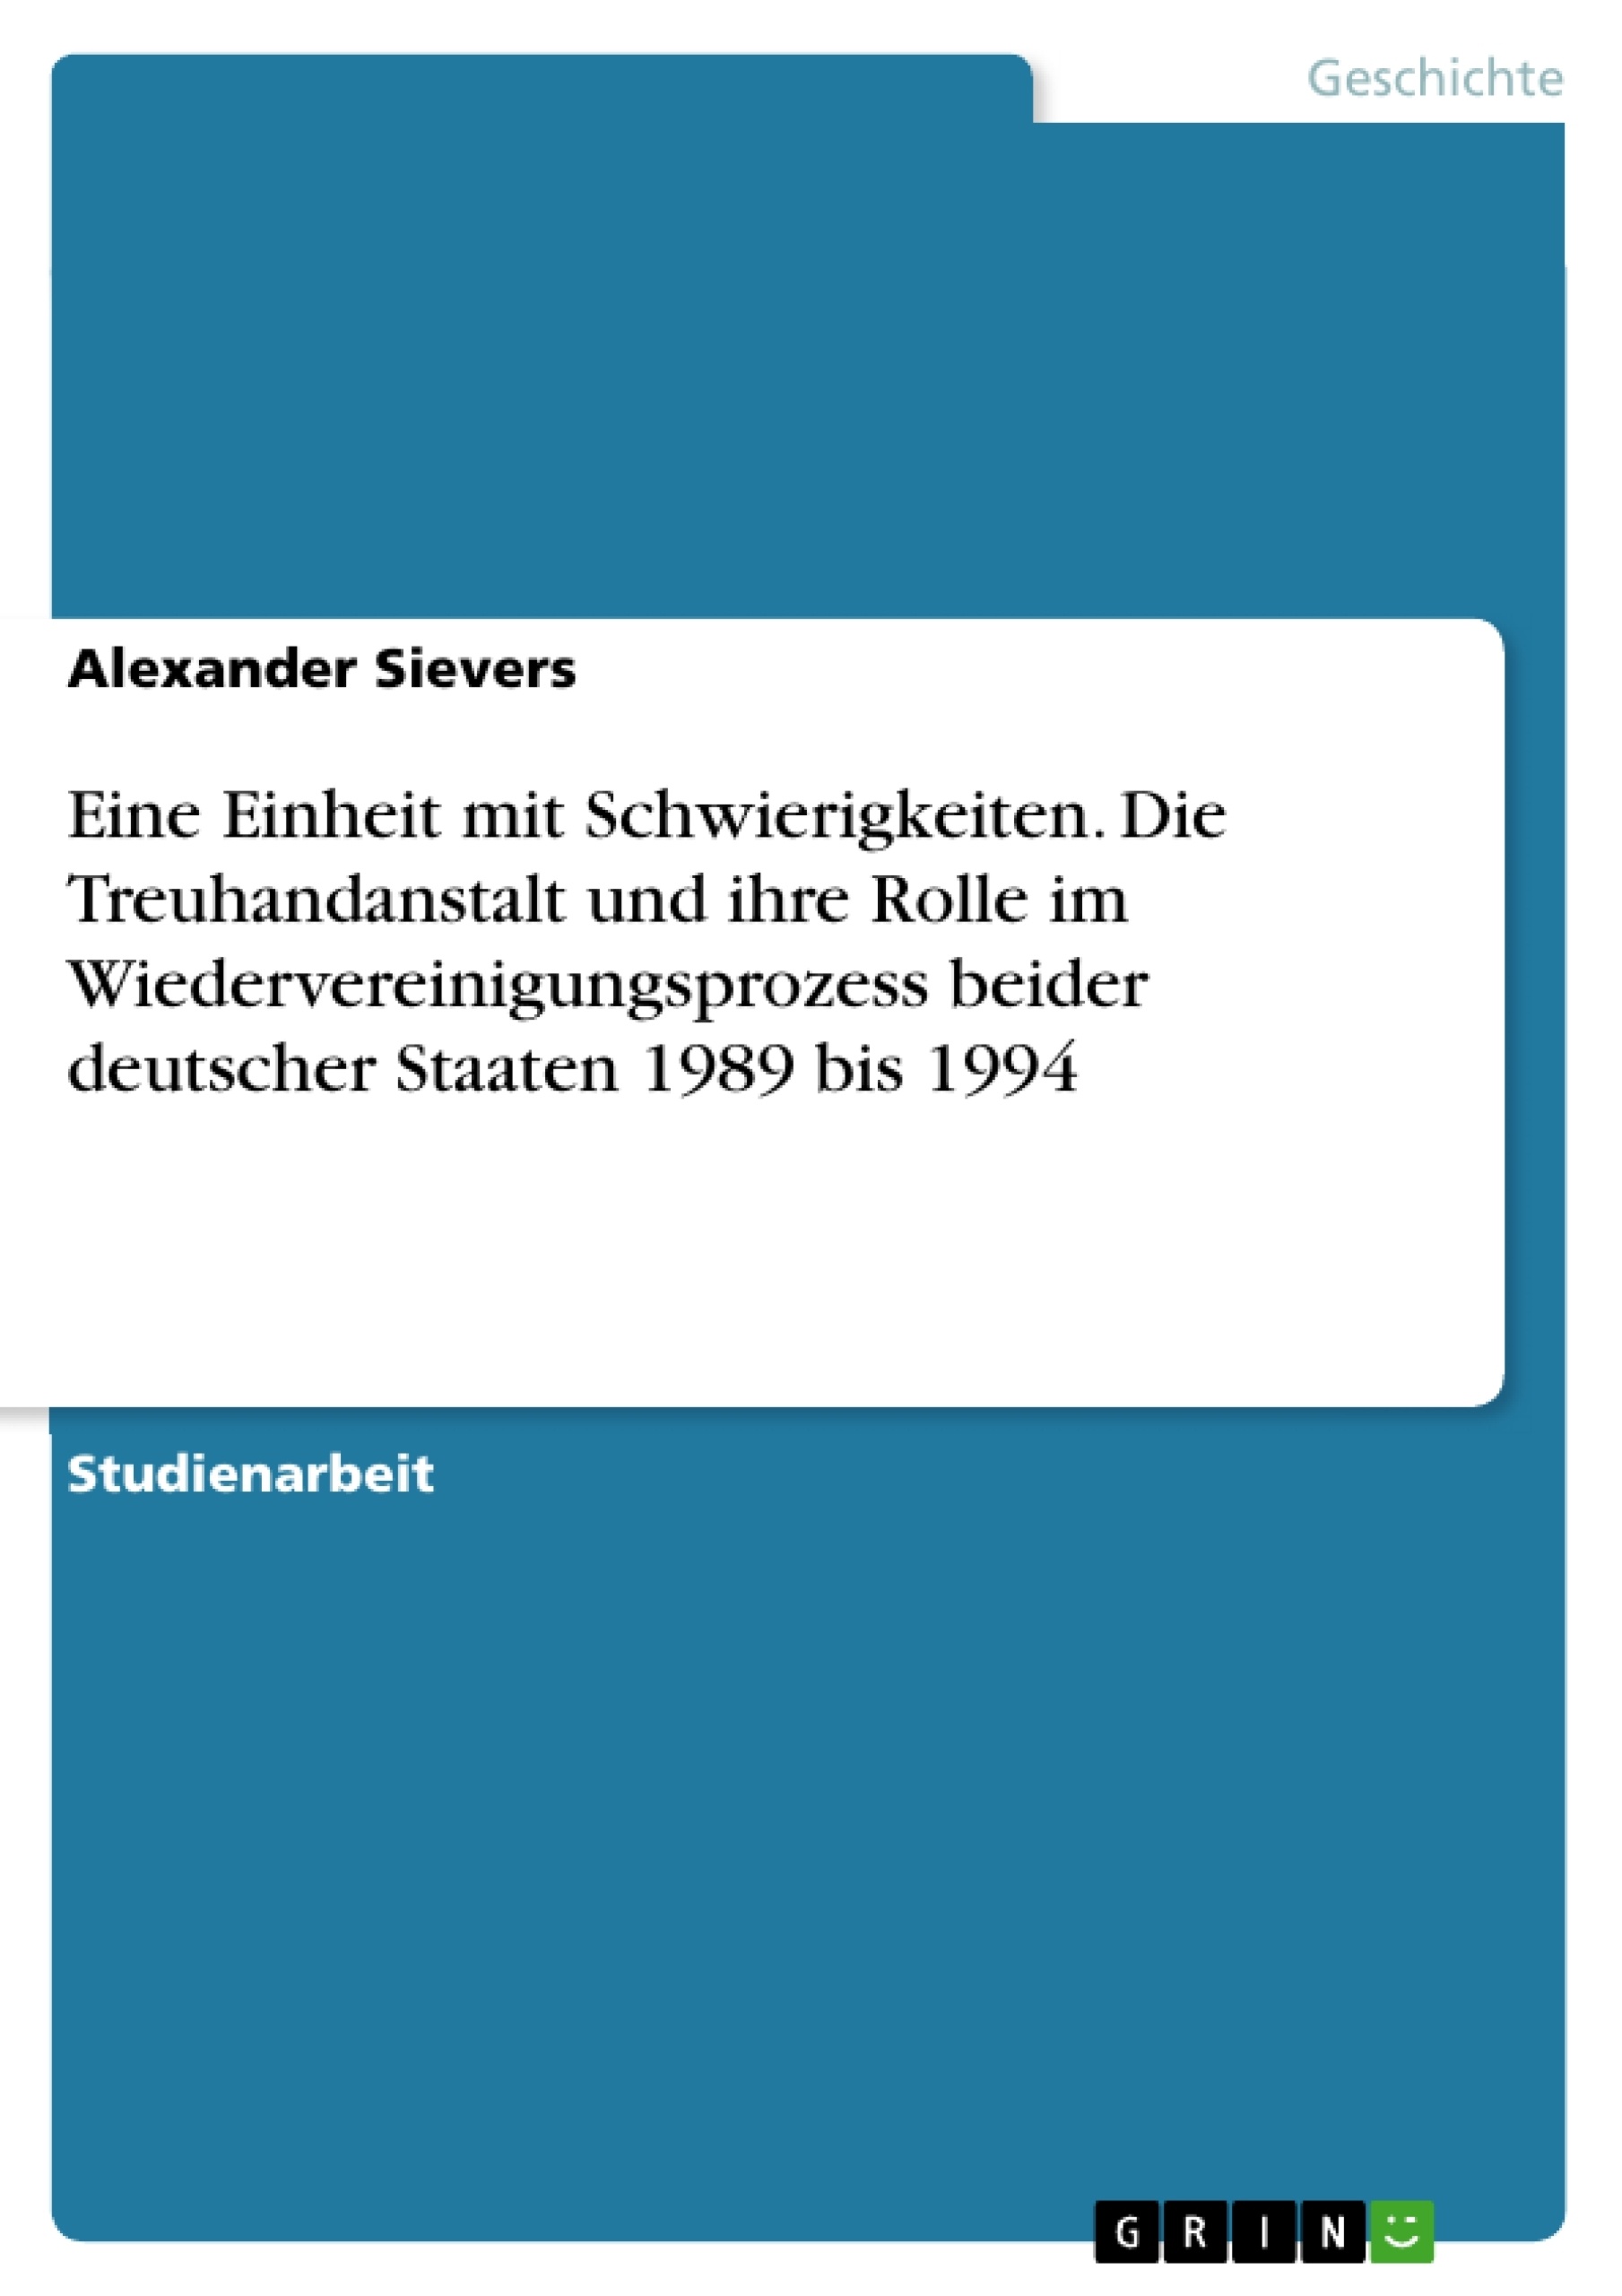 Title: Eine Einheit mit Schwierigkeiten. Die Treuhandanstalt und ihre Rolle im Wiedervereinigungsprozess beider deutscher Staaten 1989 bis 1994